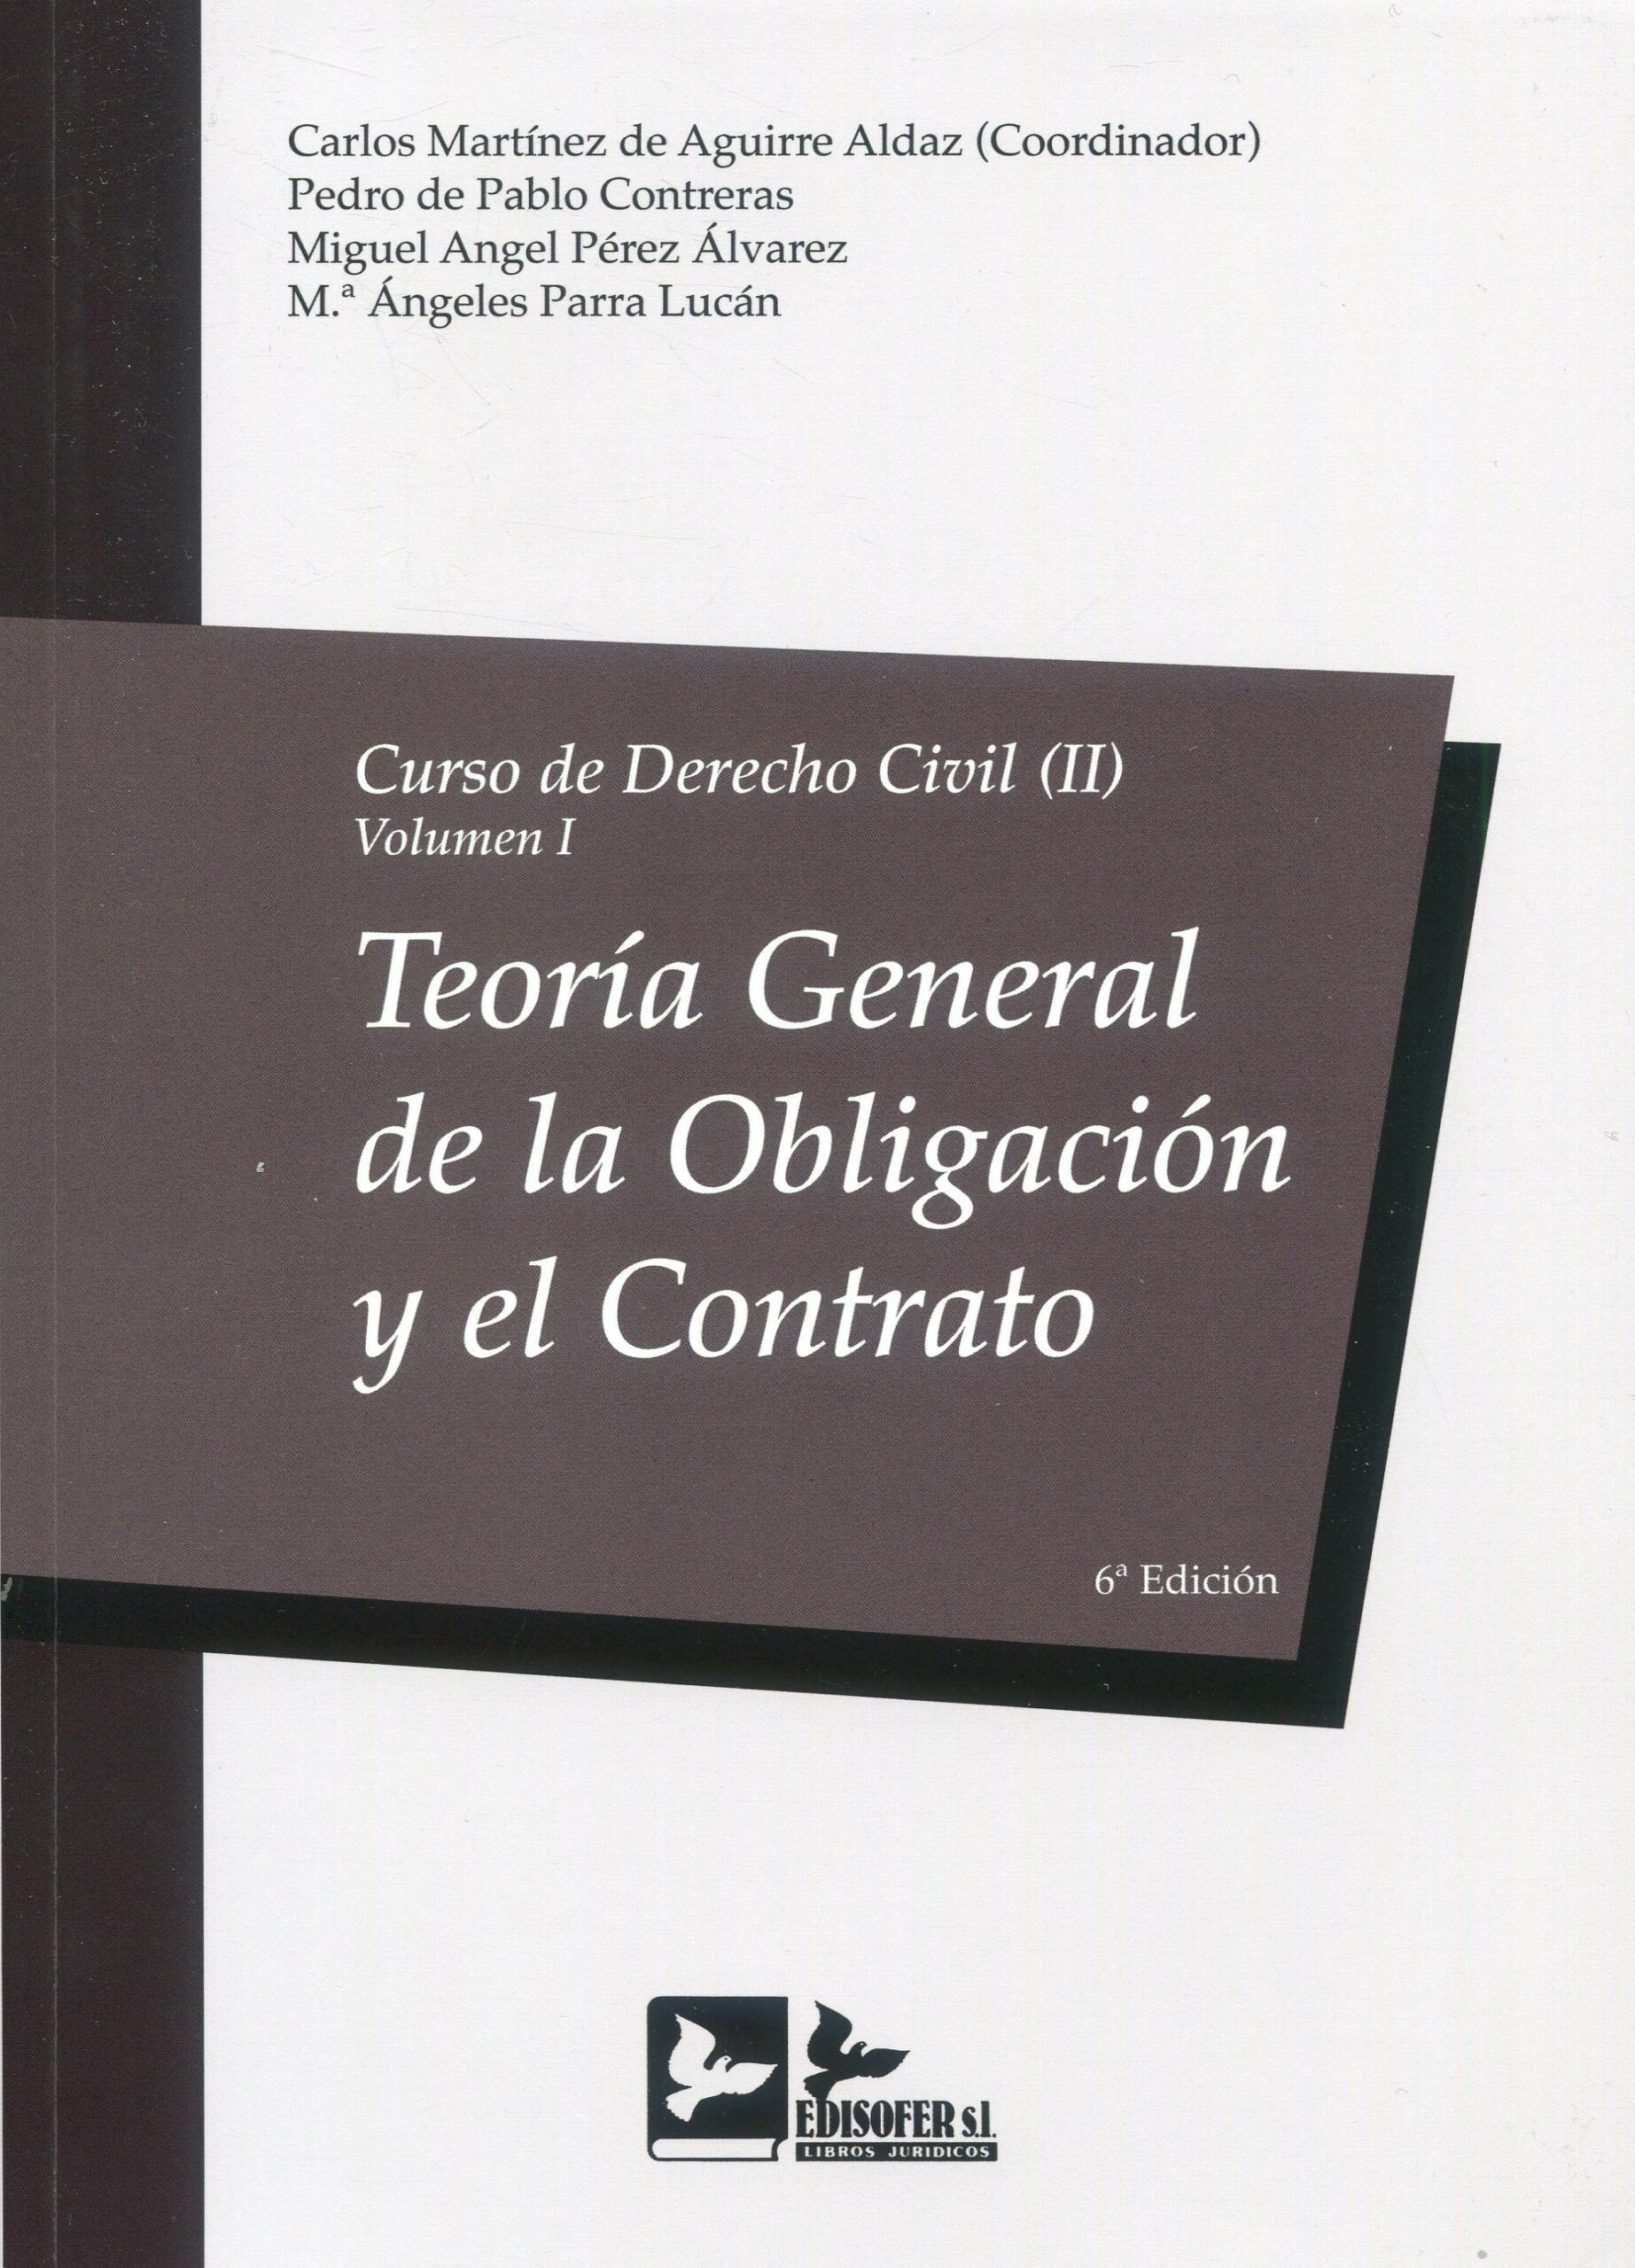 Curso de derecho civil, Tomo 2 Vol.1 "Teoría general de la obligación y el contrato"